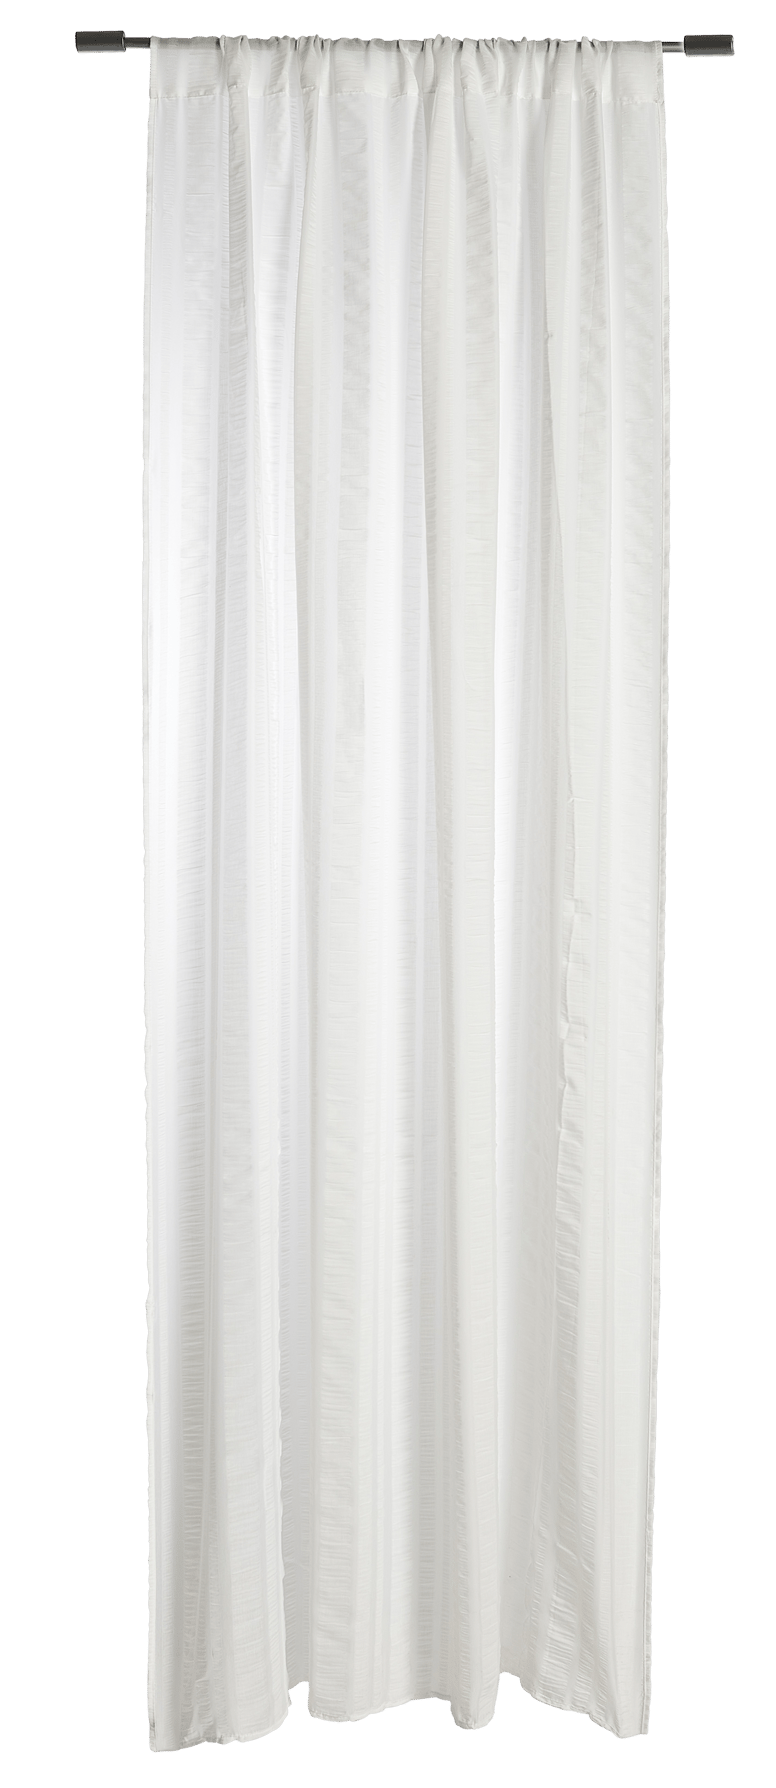 CELINE Tenda bianco W 140 x L 240 cm